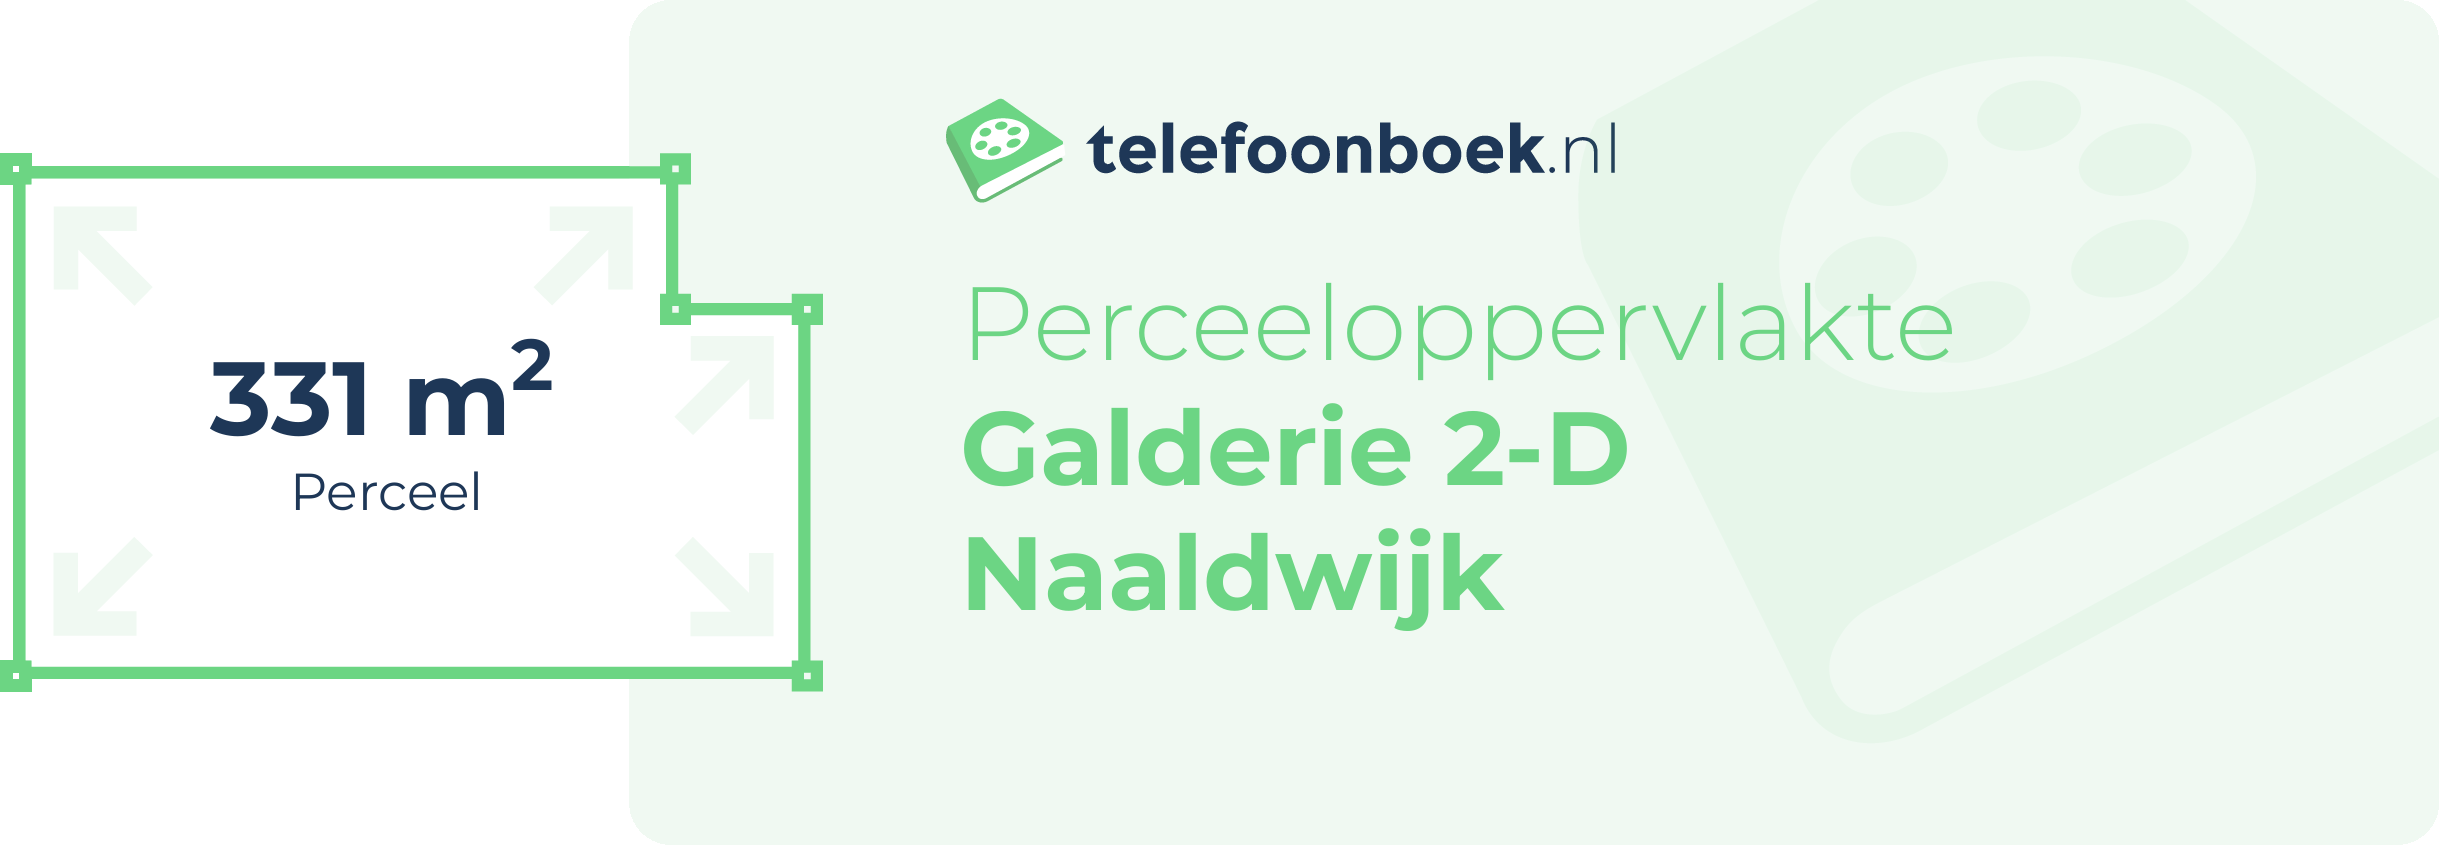 Perceeloppervlakte Galderie 2-D Naaldwijk